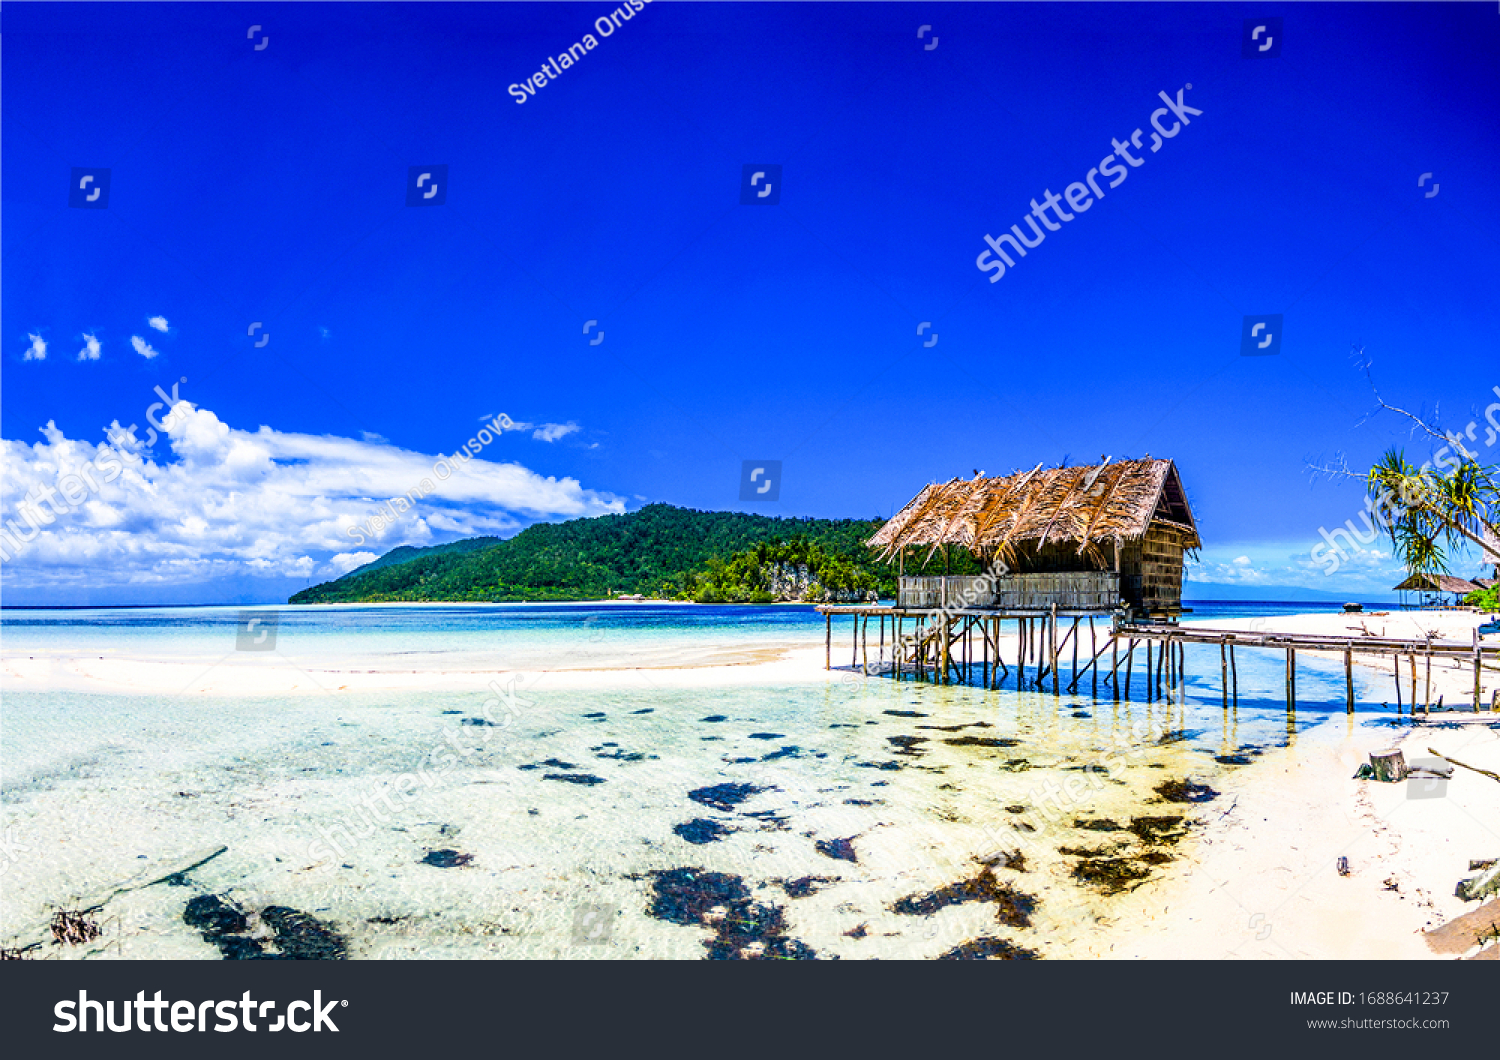 Tropical tourism. Sea island beach bungalow landscape #1688641237